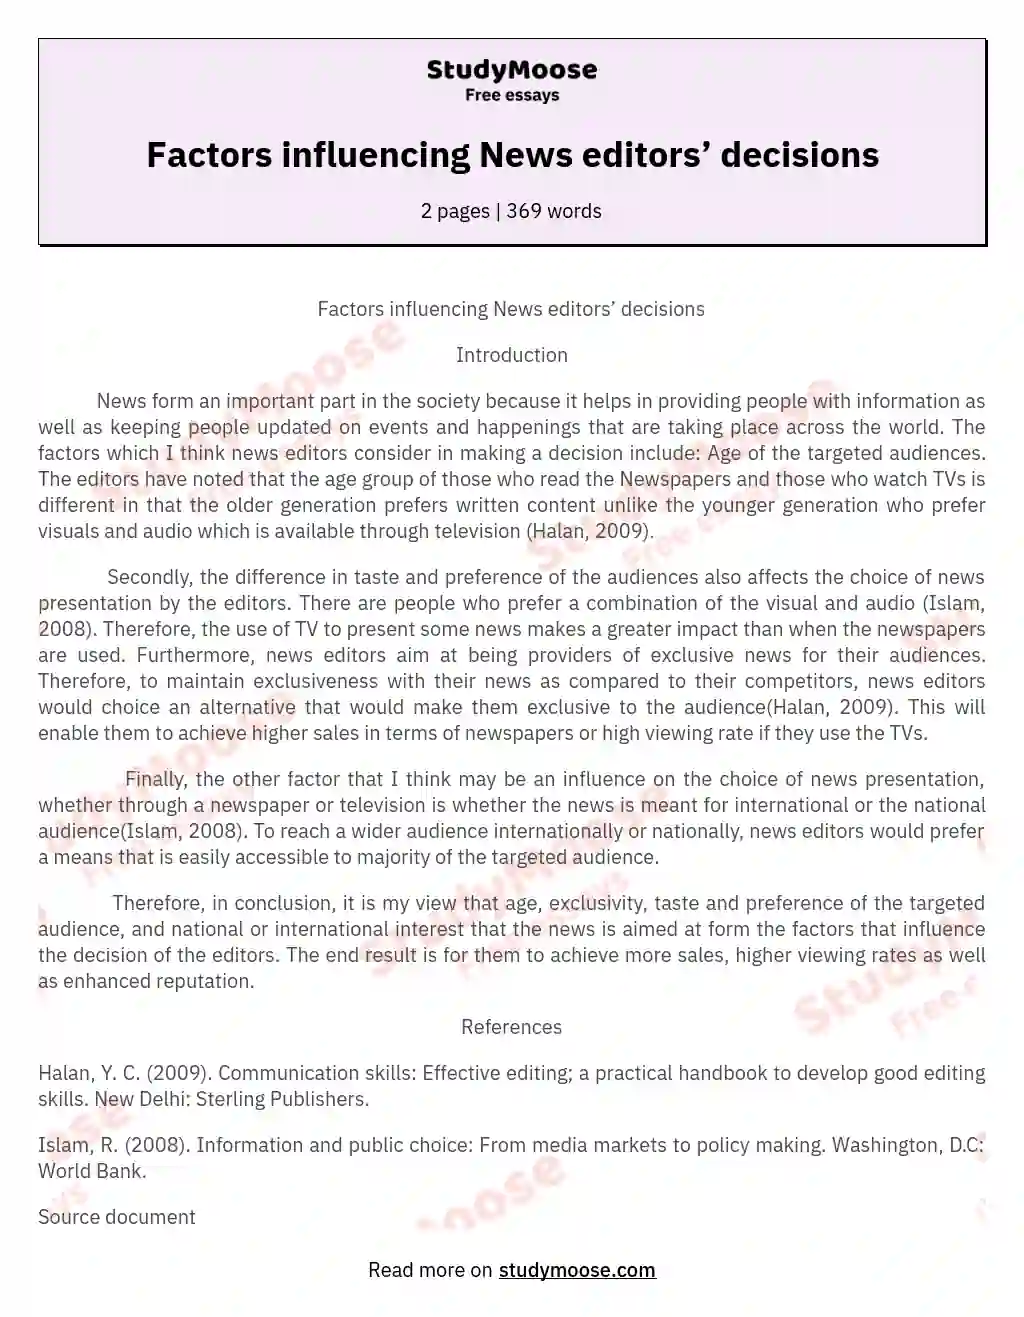 Factors influencing News editors’ decisions